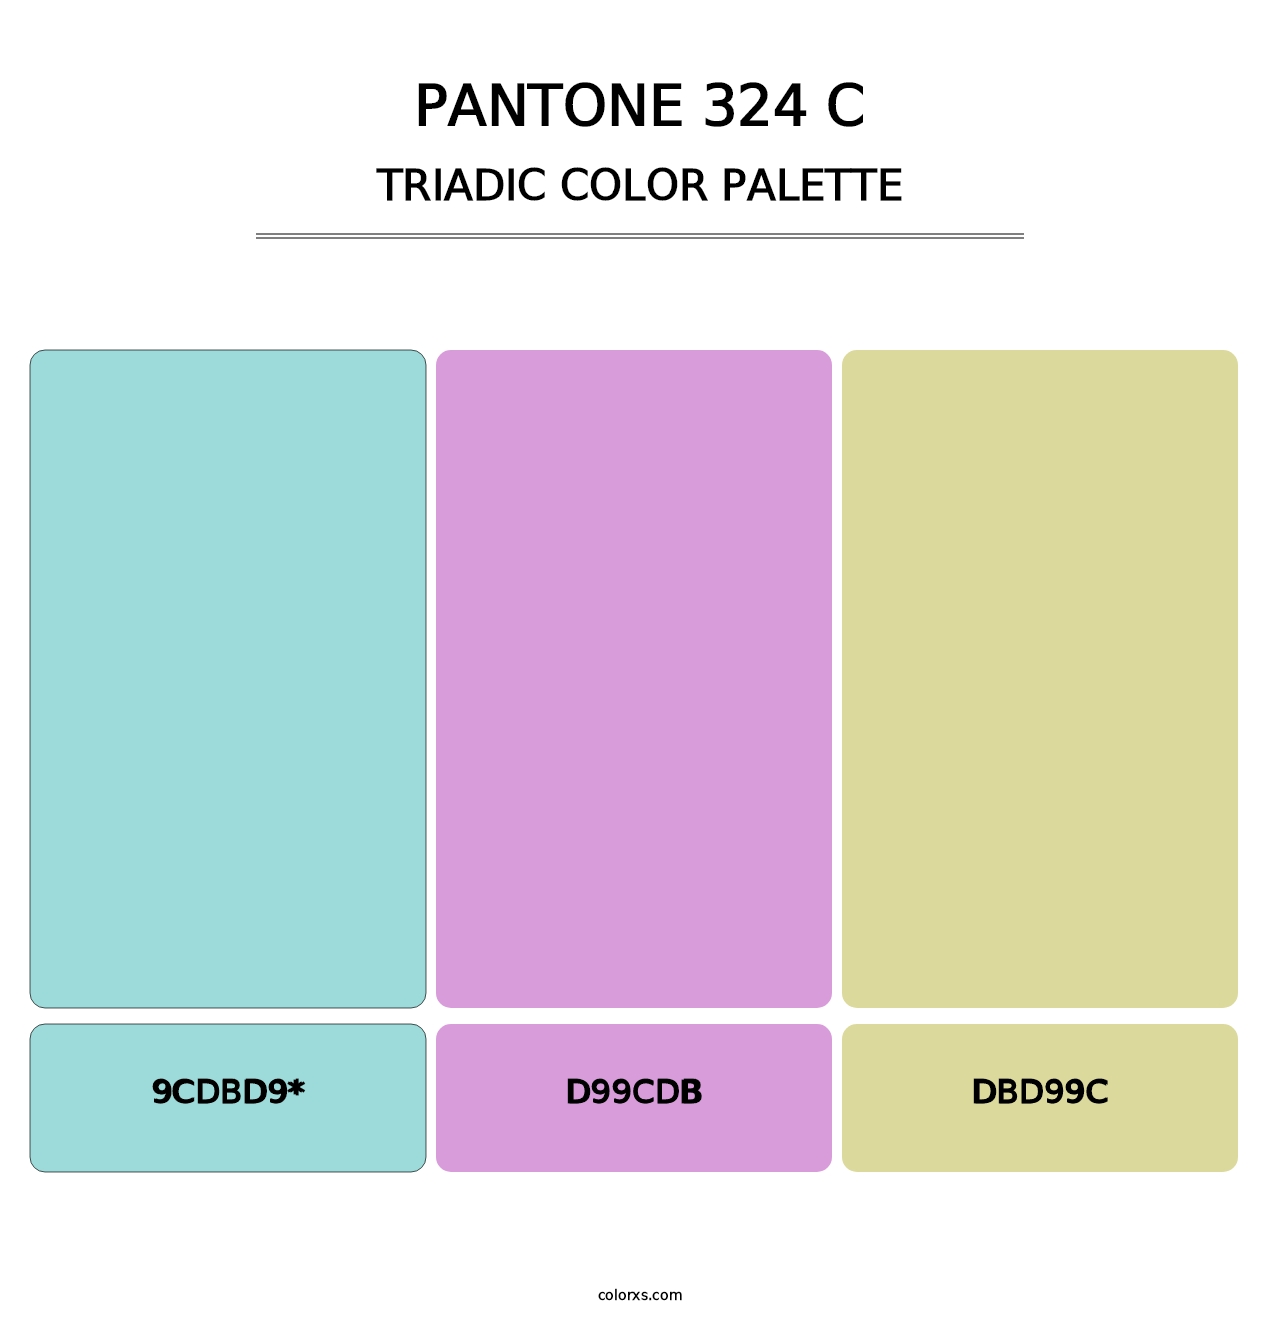 PANTONE 324 C - Triadic Color Palette